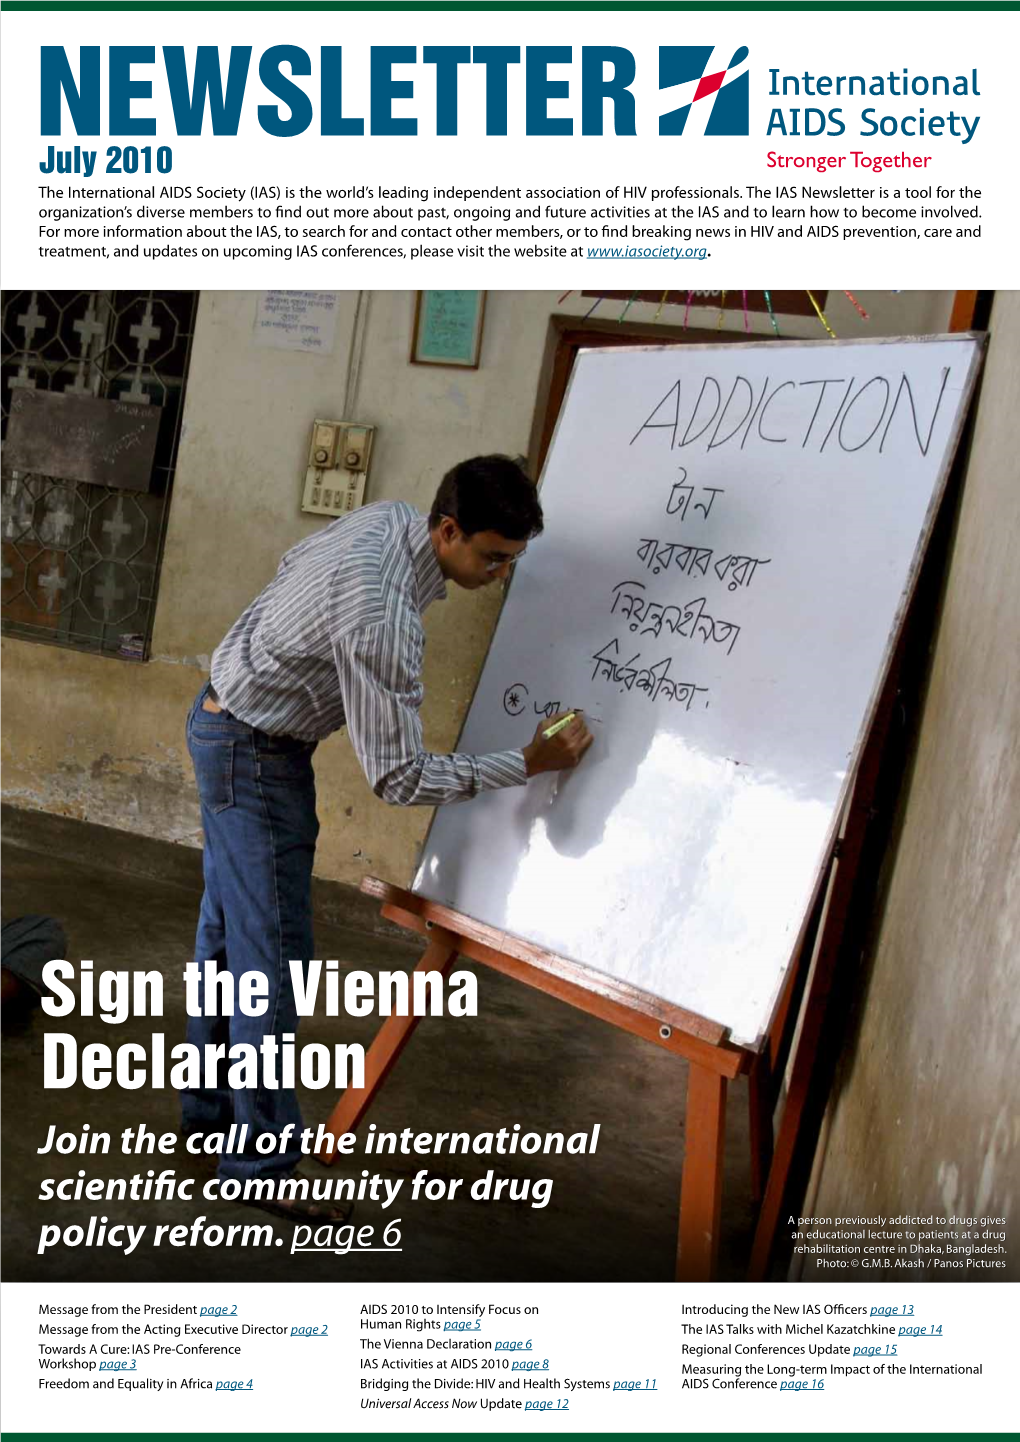 Sign the Vienna Declaration